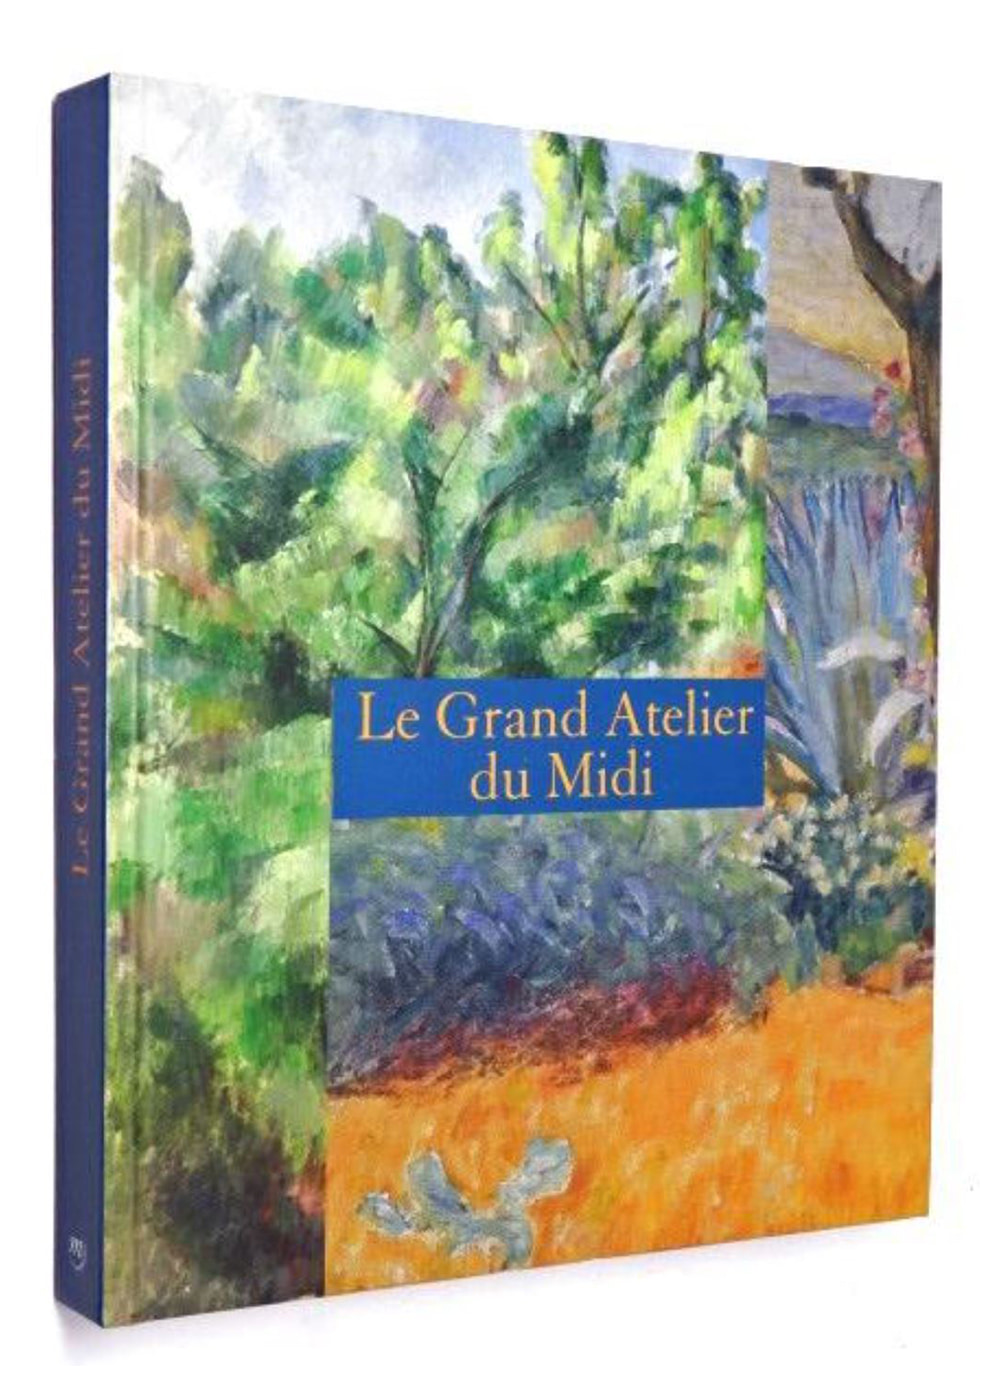 Cézanne, matisse, Van Gogh, etc. - Le grand atelier du Midi